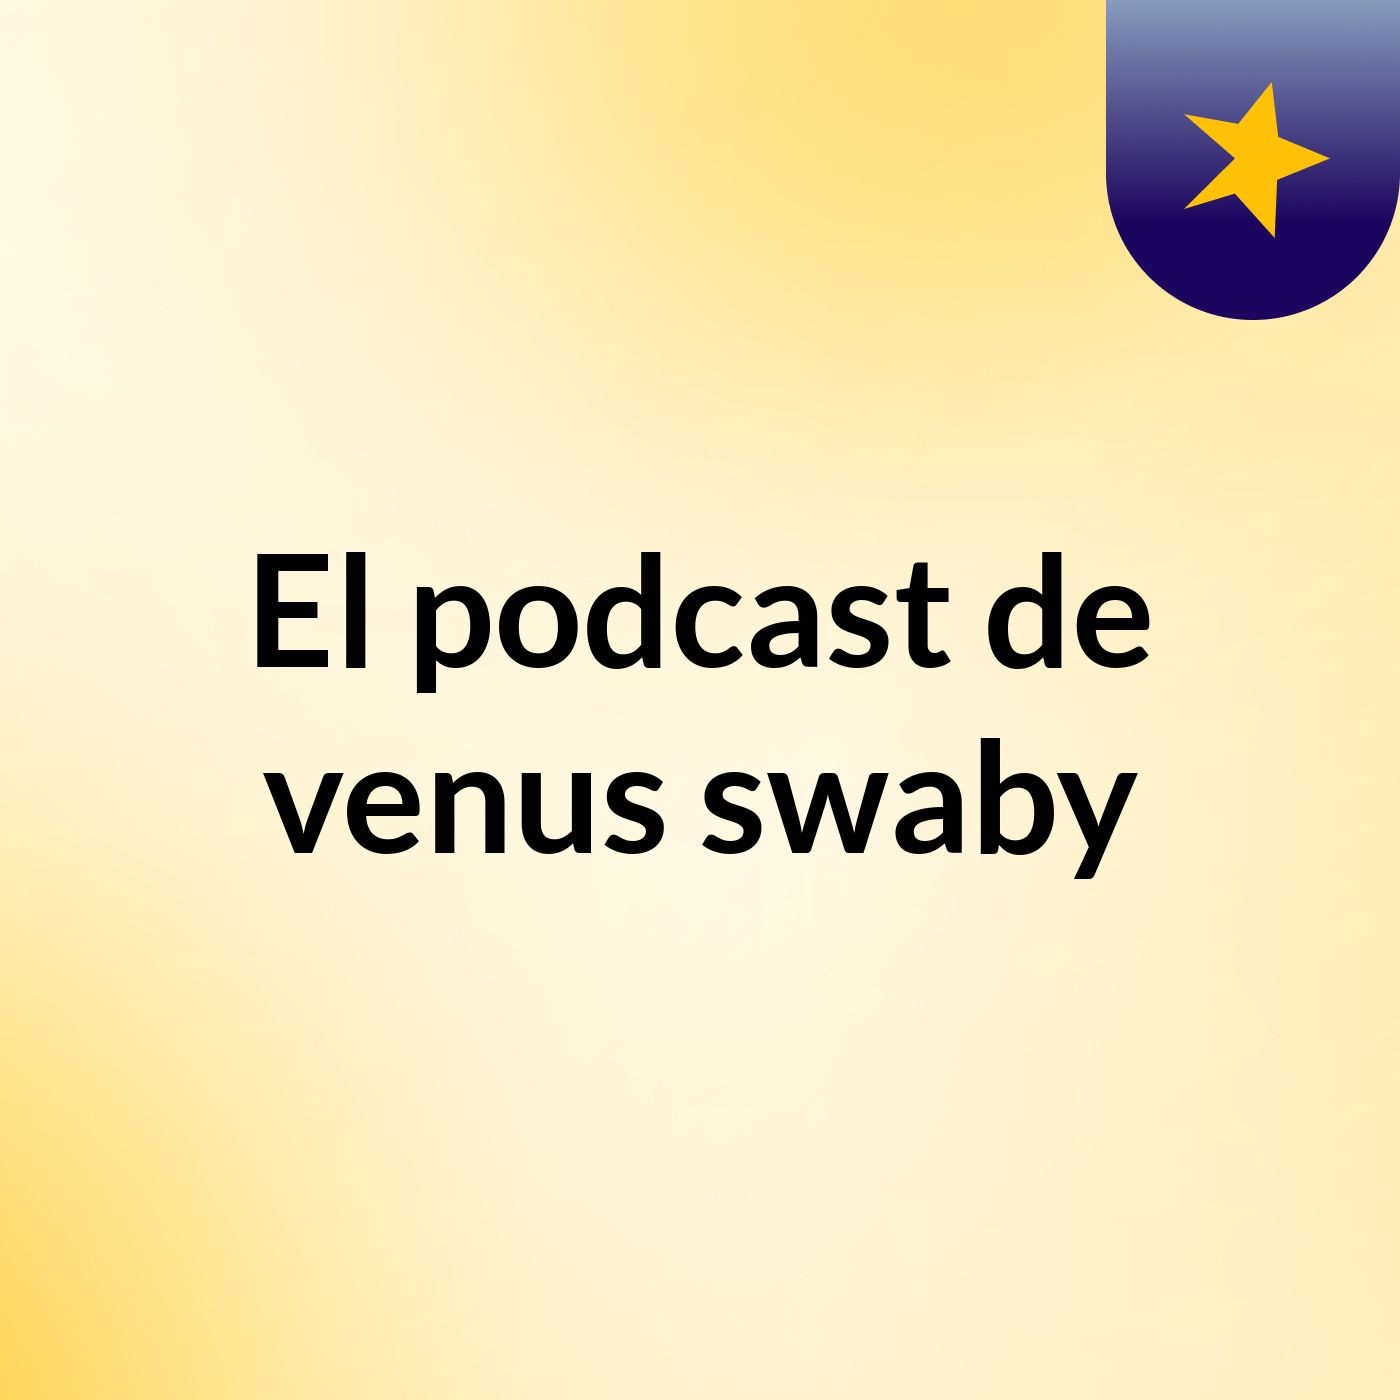 Episodio 7 - El podcast de venus swaby